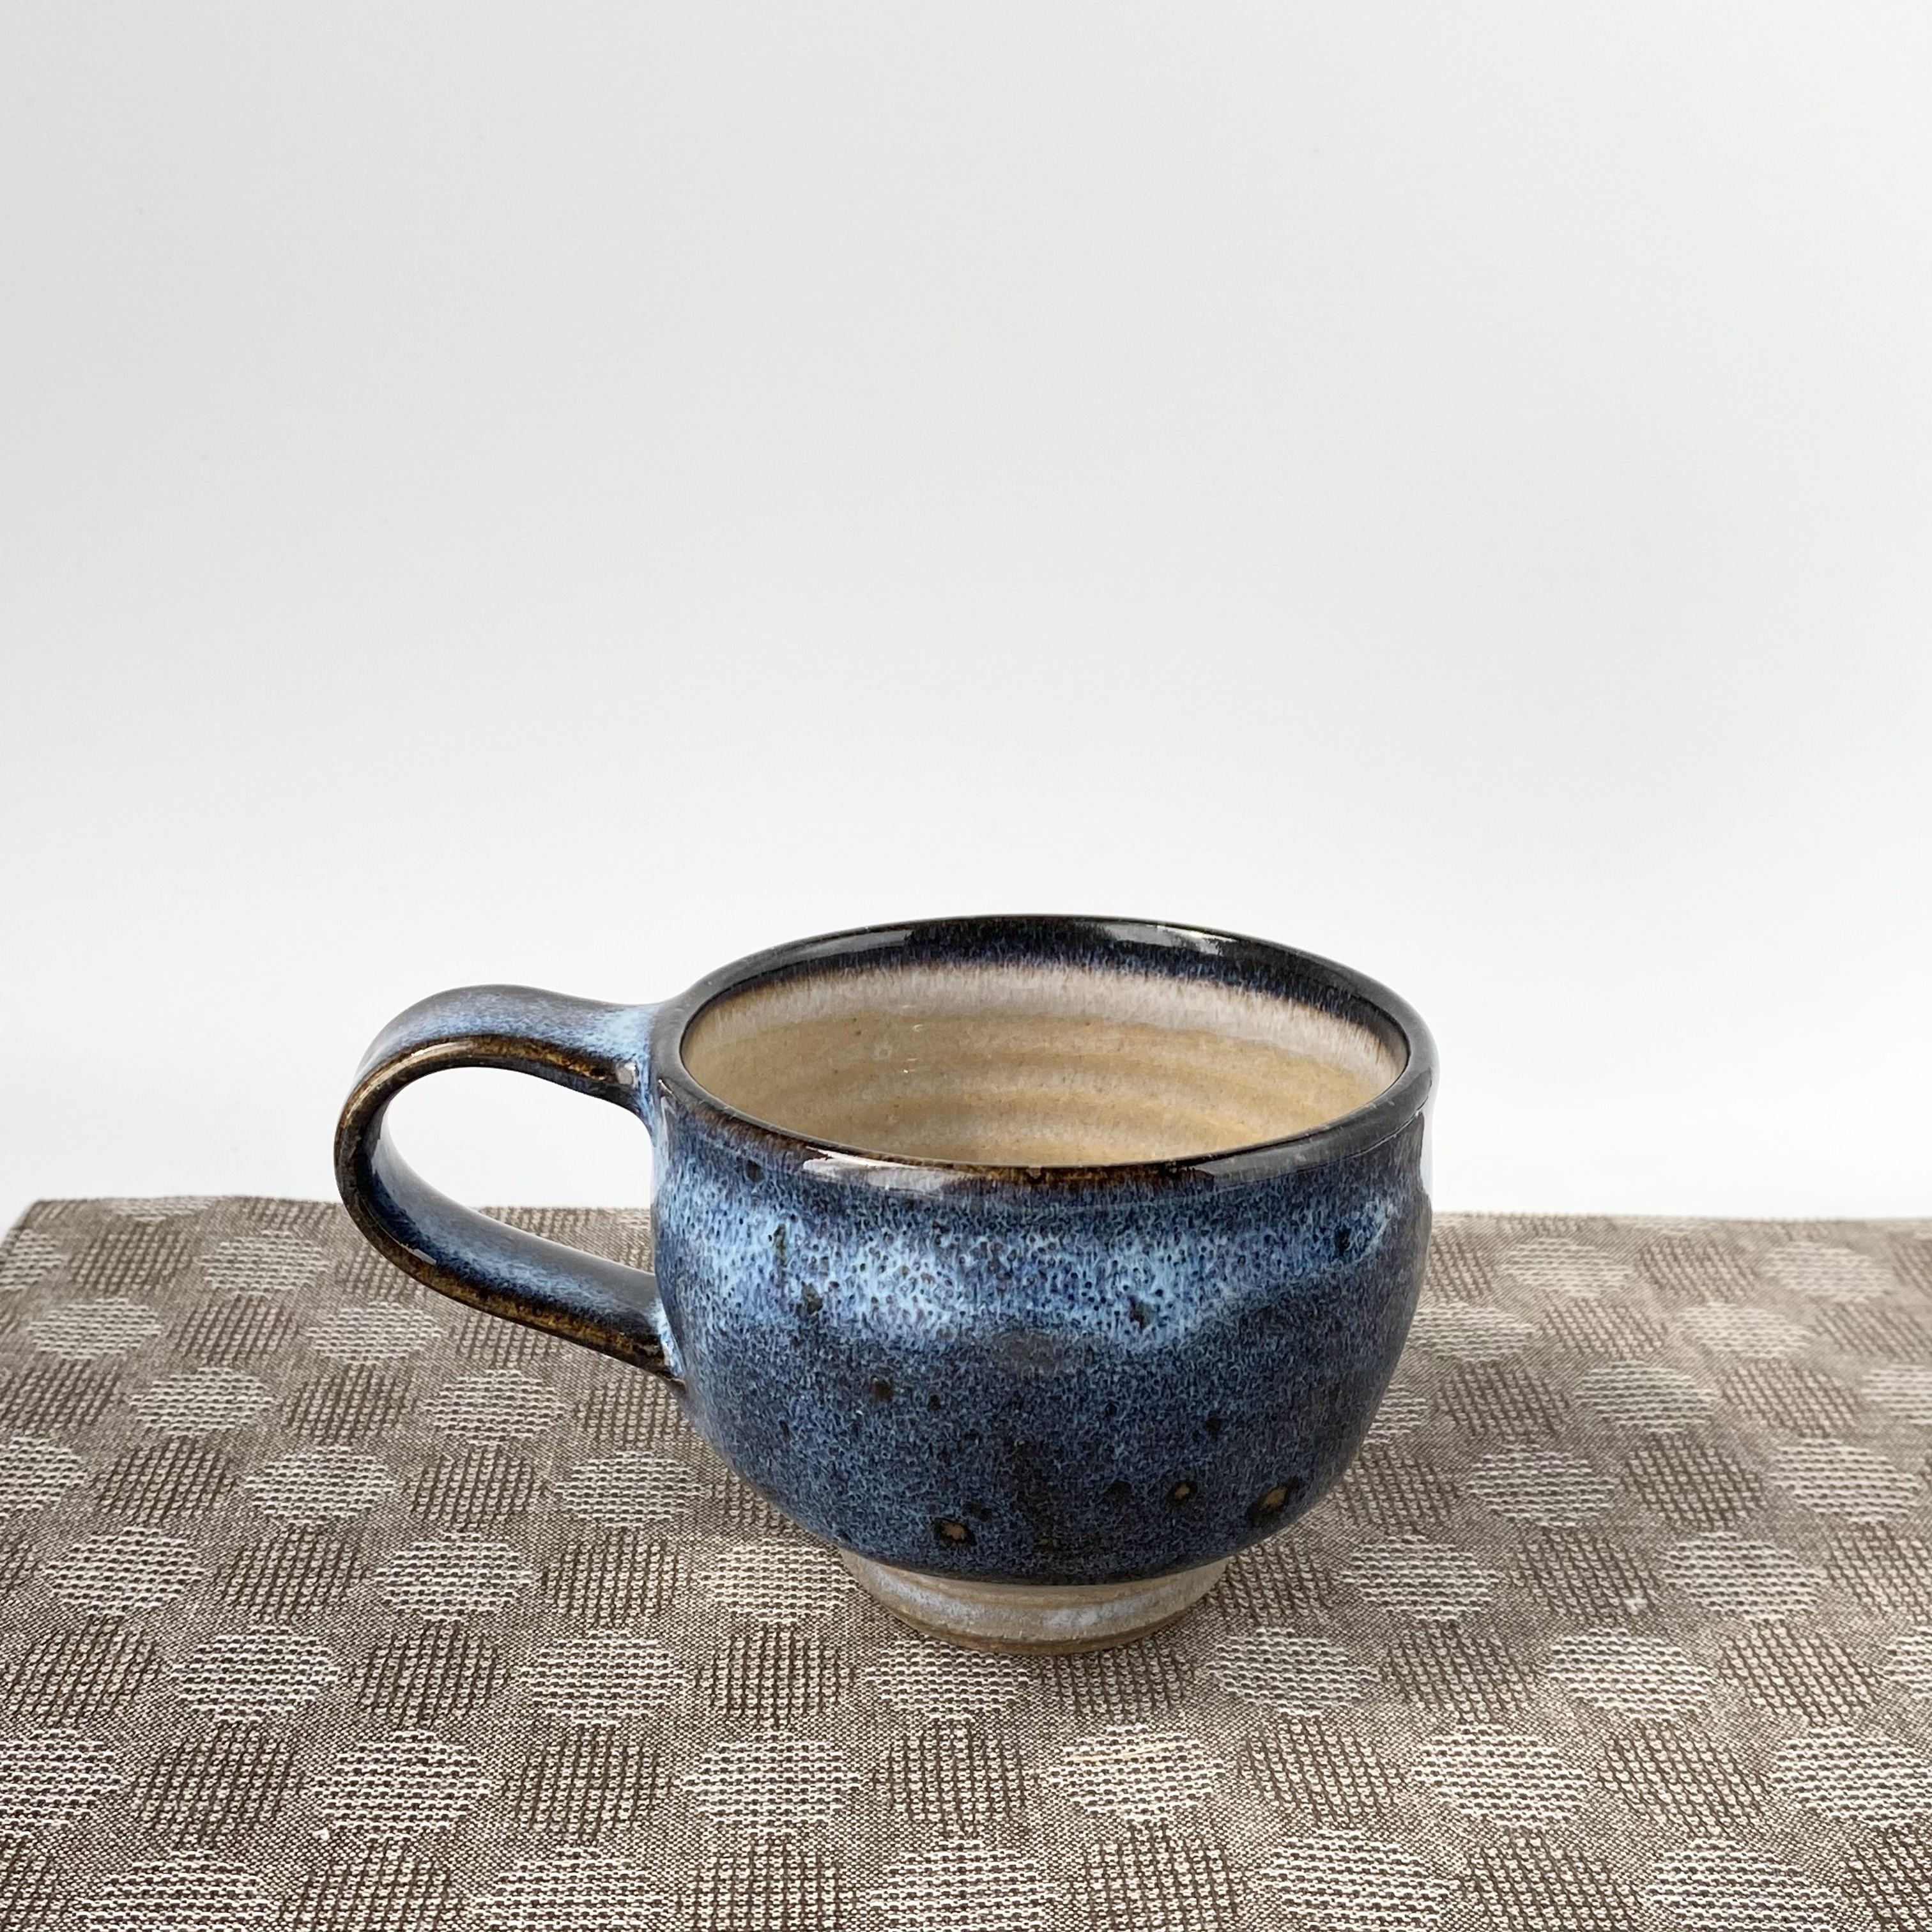 ブルーがきれいなコーヒーカップソーサ― 珈琲碗皿 紅茶碗 カフェ 手仕事 民藝 窯元【和陶器 ブルー ベージュ】 